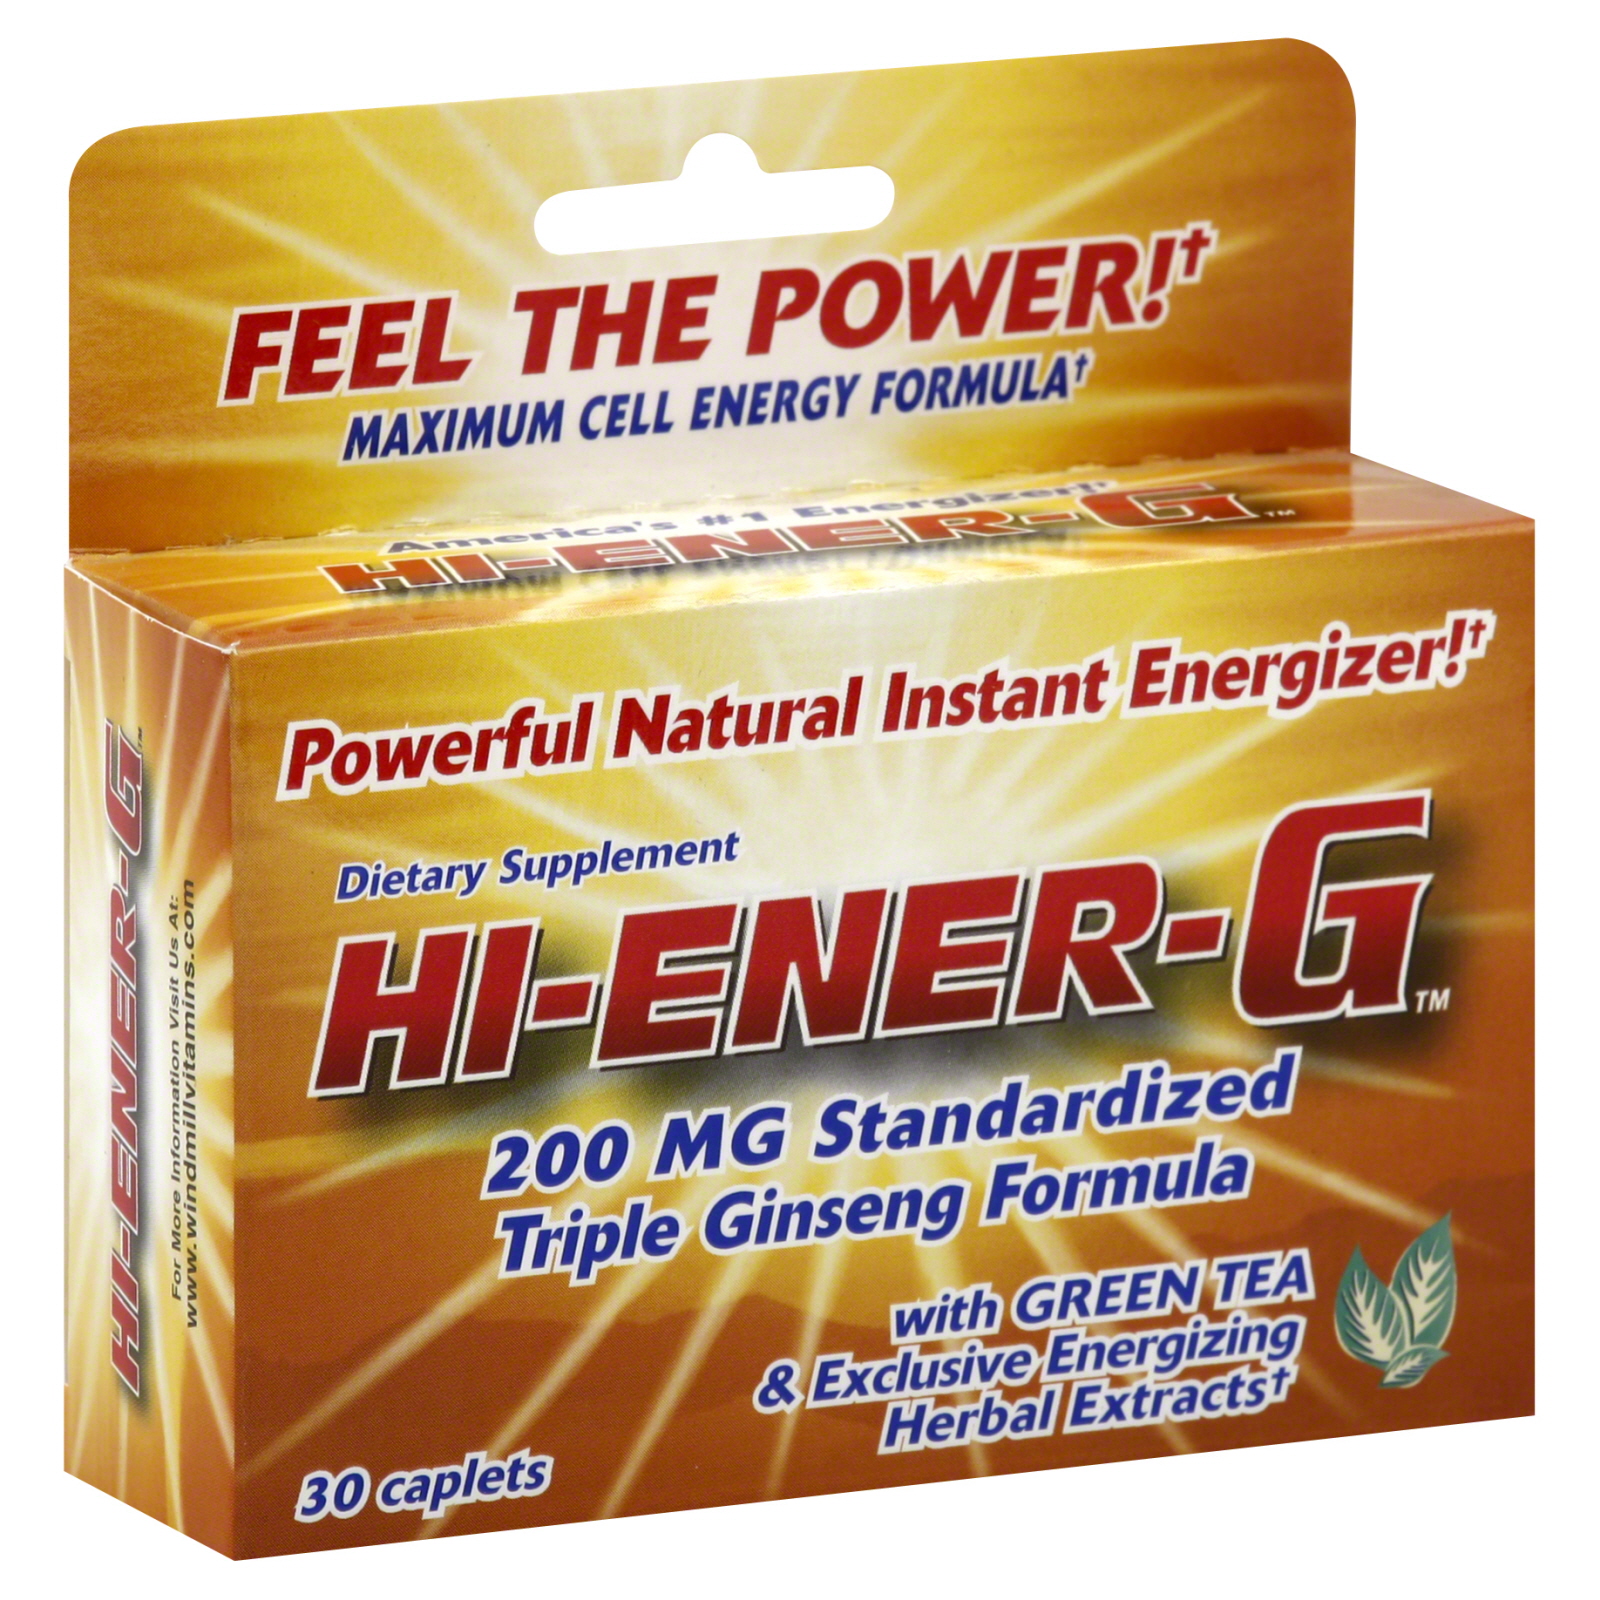 Hi-Ener-G Triple Ginseng Formula, 200 mg Standardized, Caplets, 30 caplets